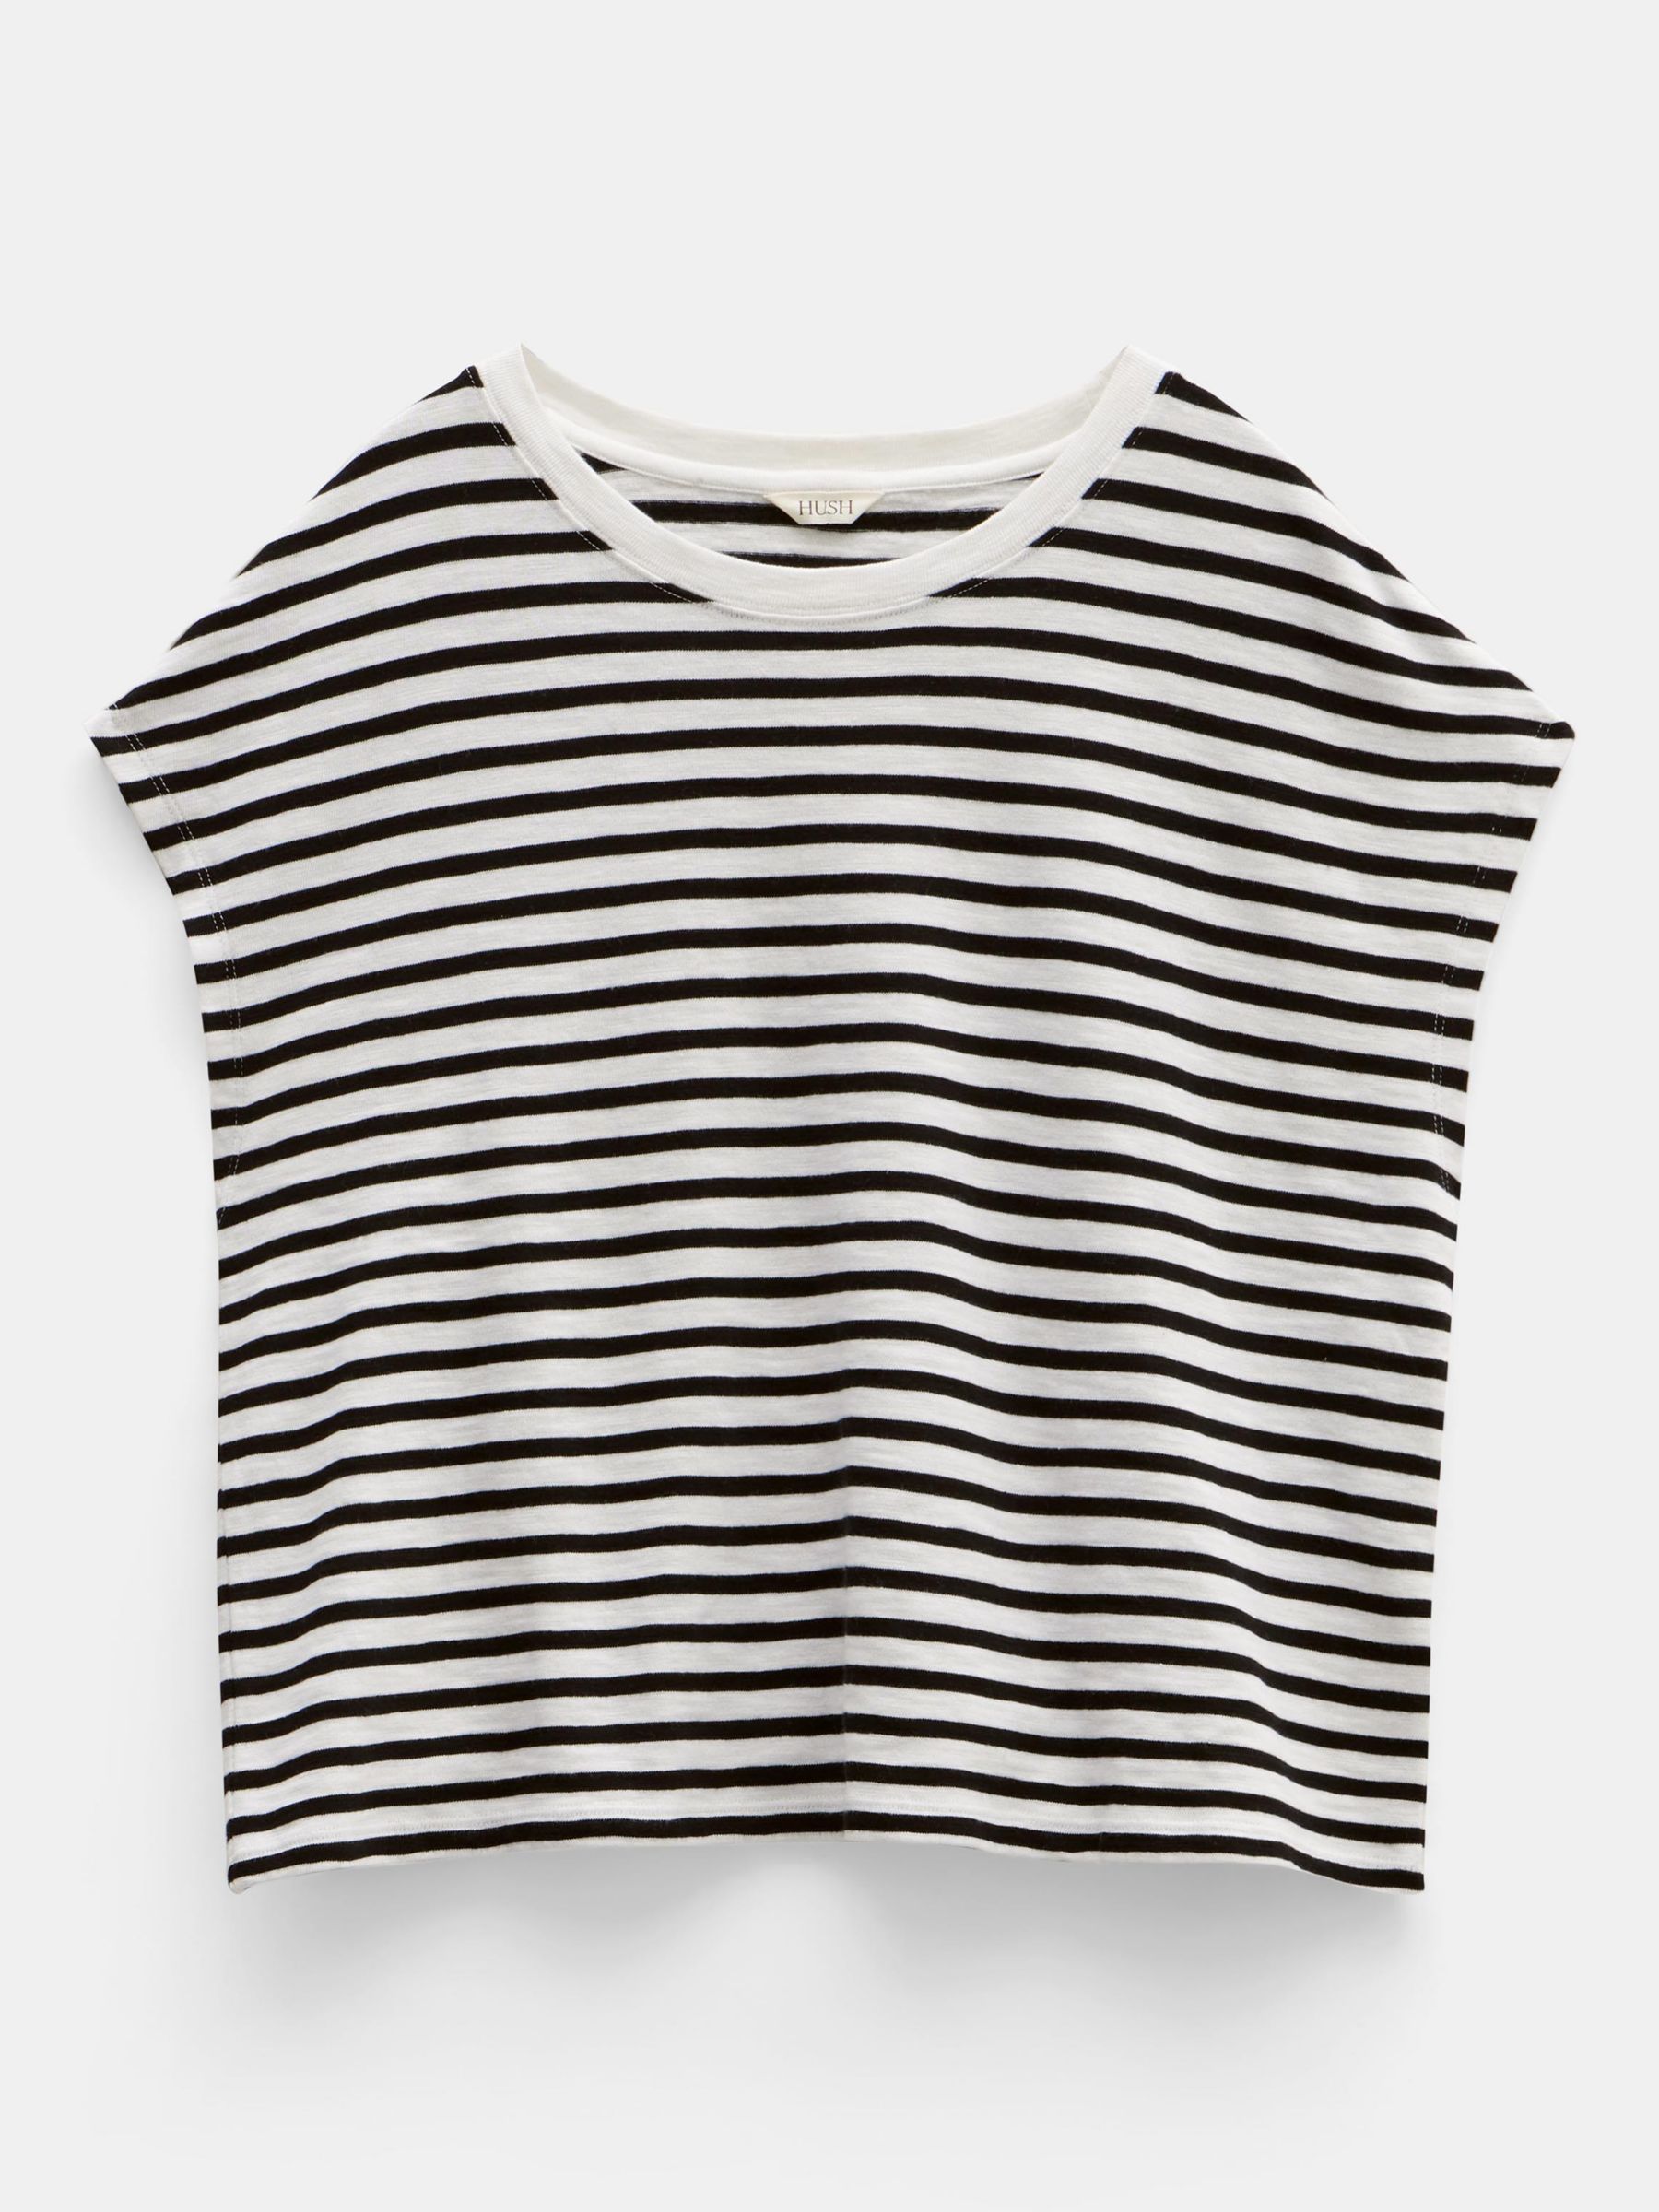 HUSH Piper Stripe Cap Sleeve T-Shirt, White/Black, L